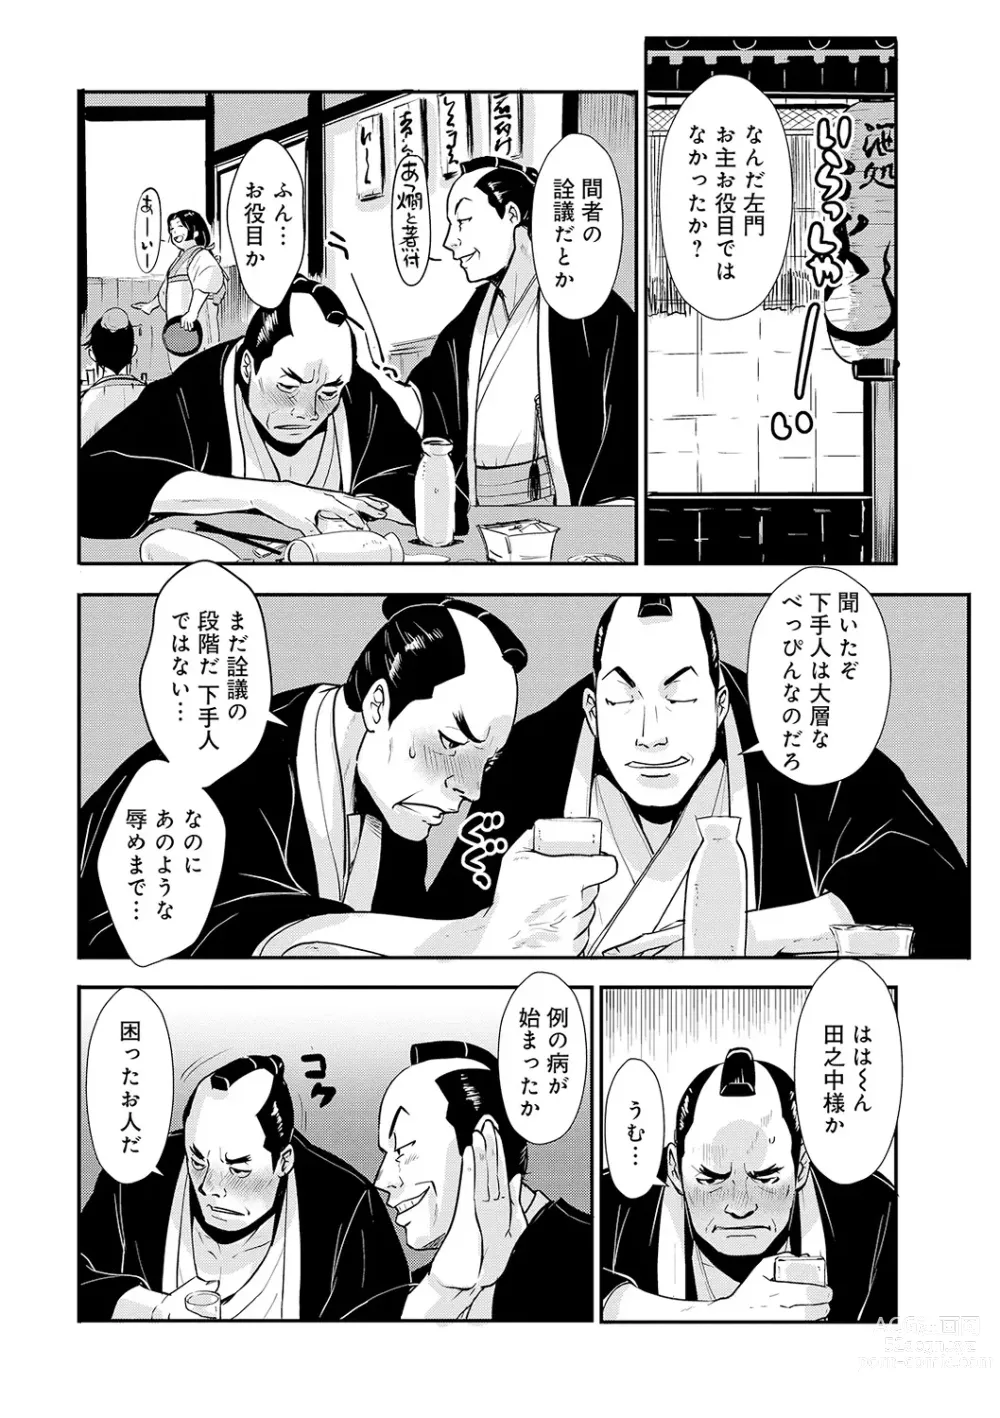 Page 6 of manga Harami samurai 10 ~Koukiku o Kakuchou sare Kanchousareru Onna Kenshi~